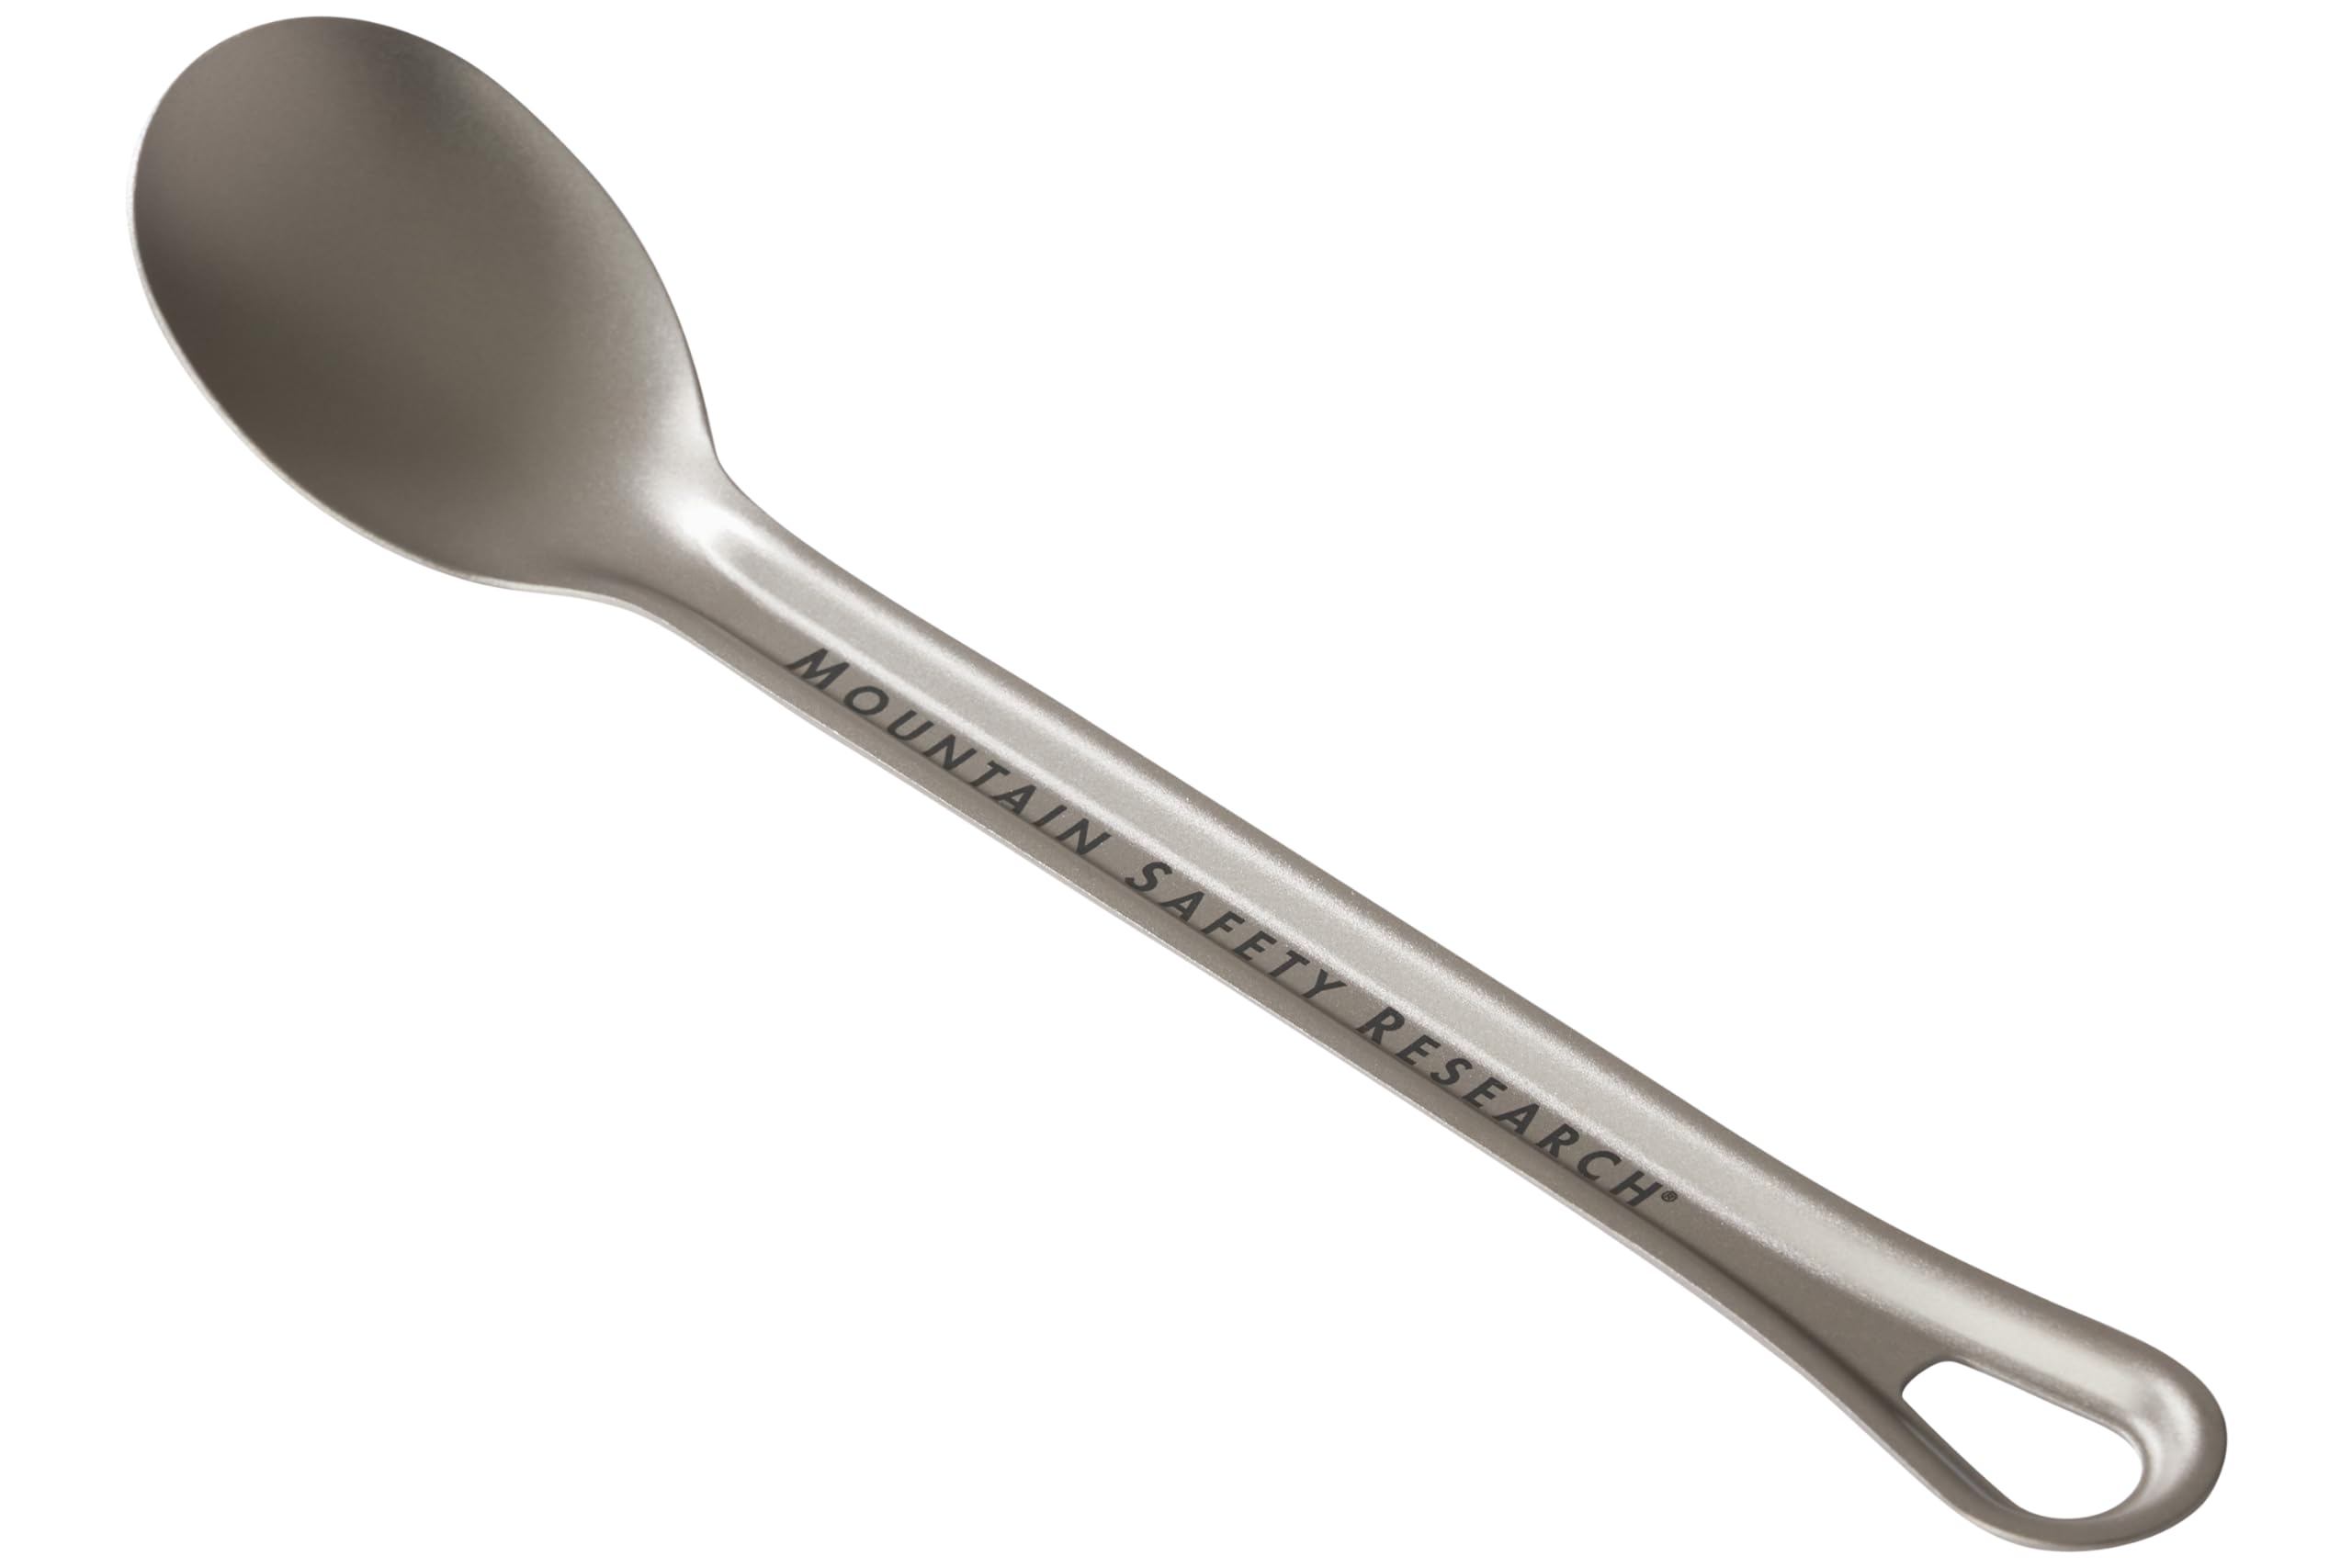 MSR Titan Ultralight Titanium Long Spoon